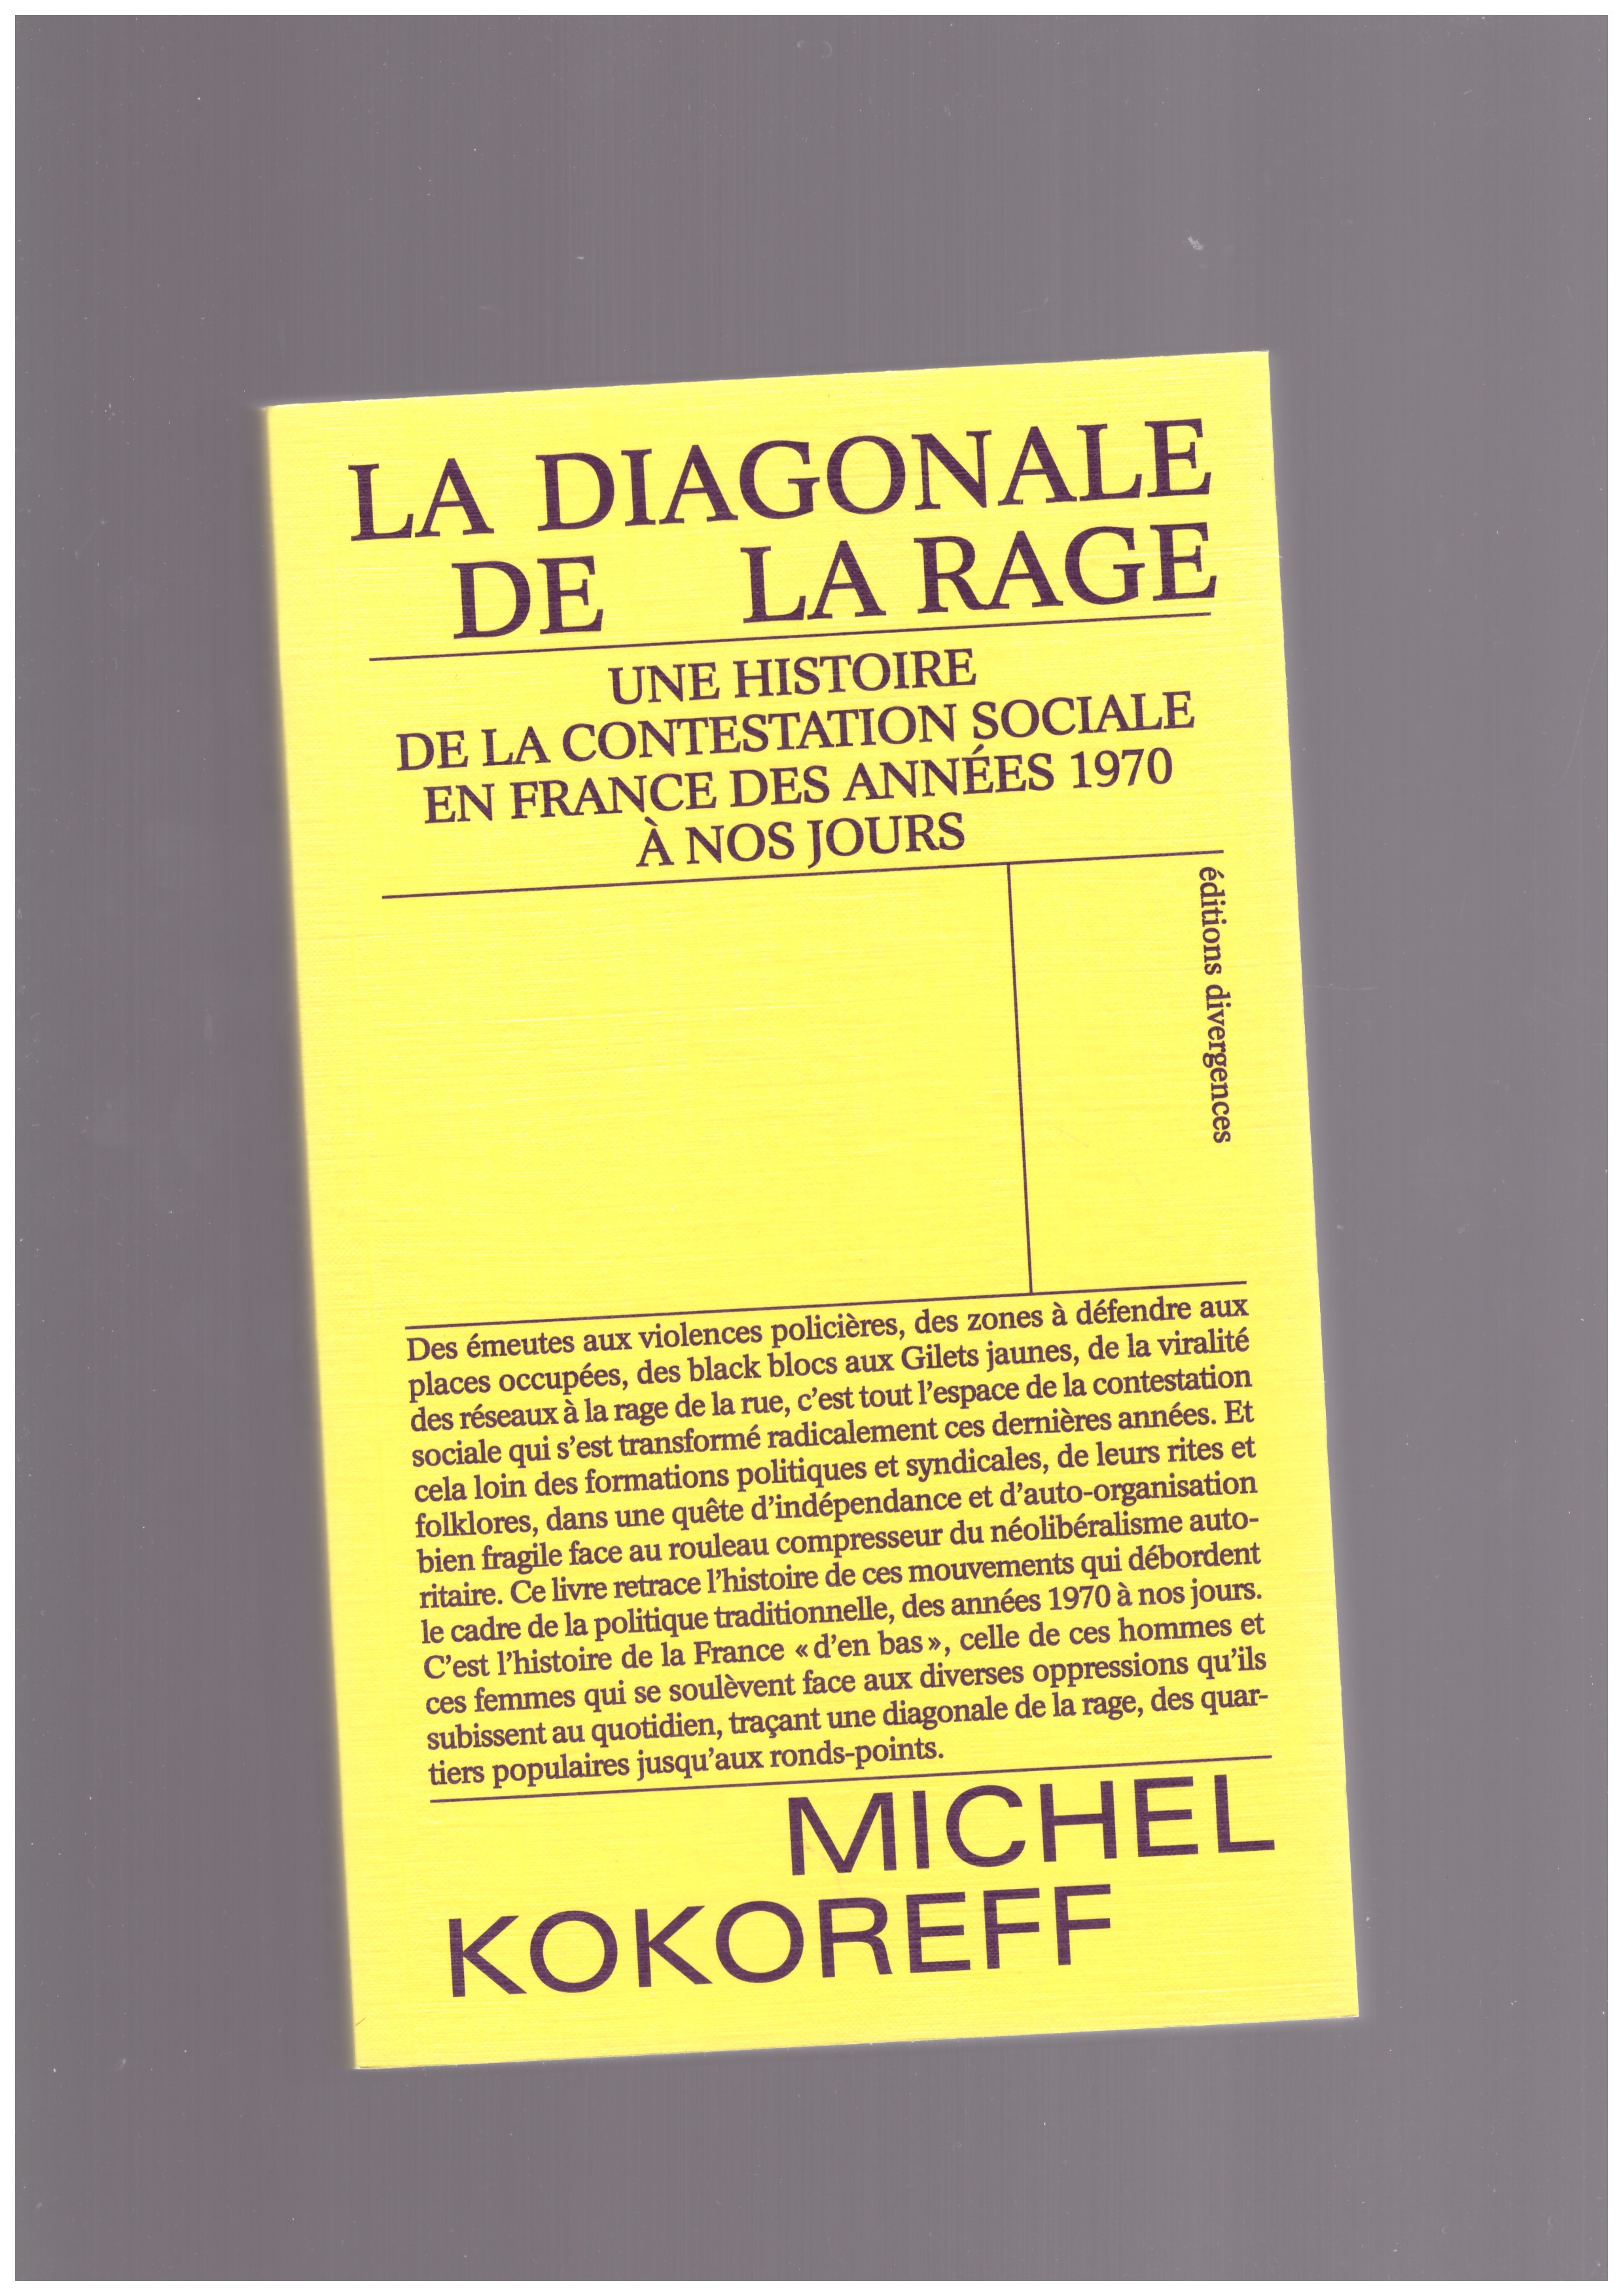 KOKOREFF, Michel - La diagonale de la rage